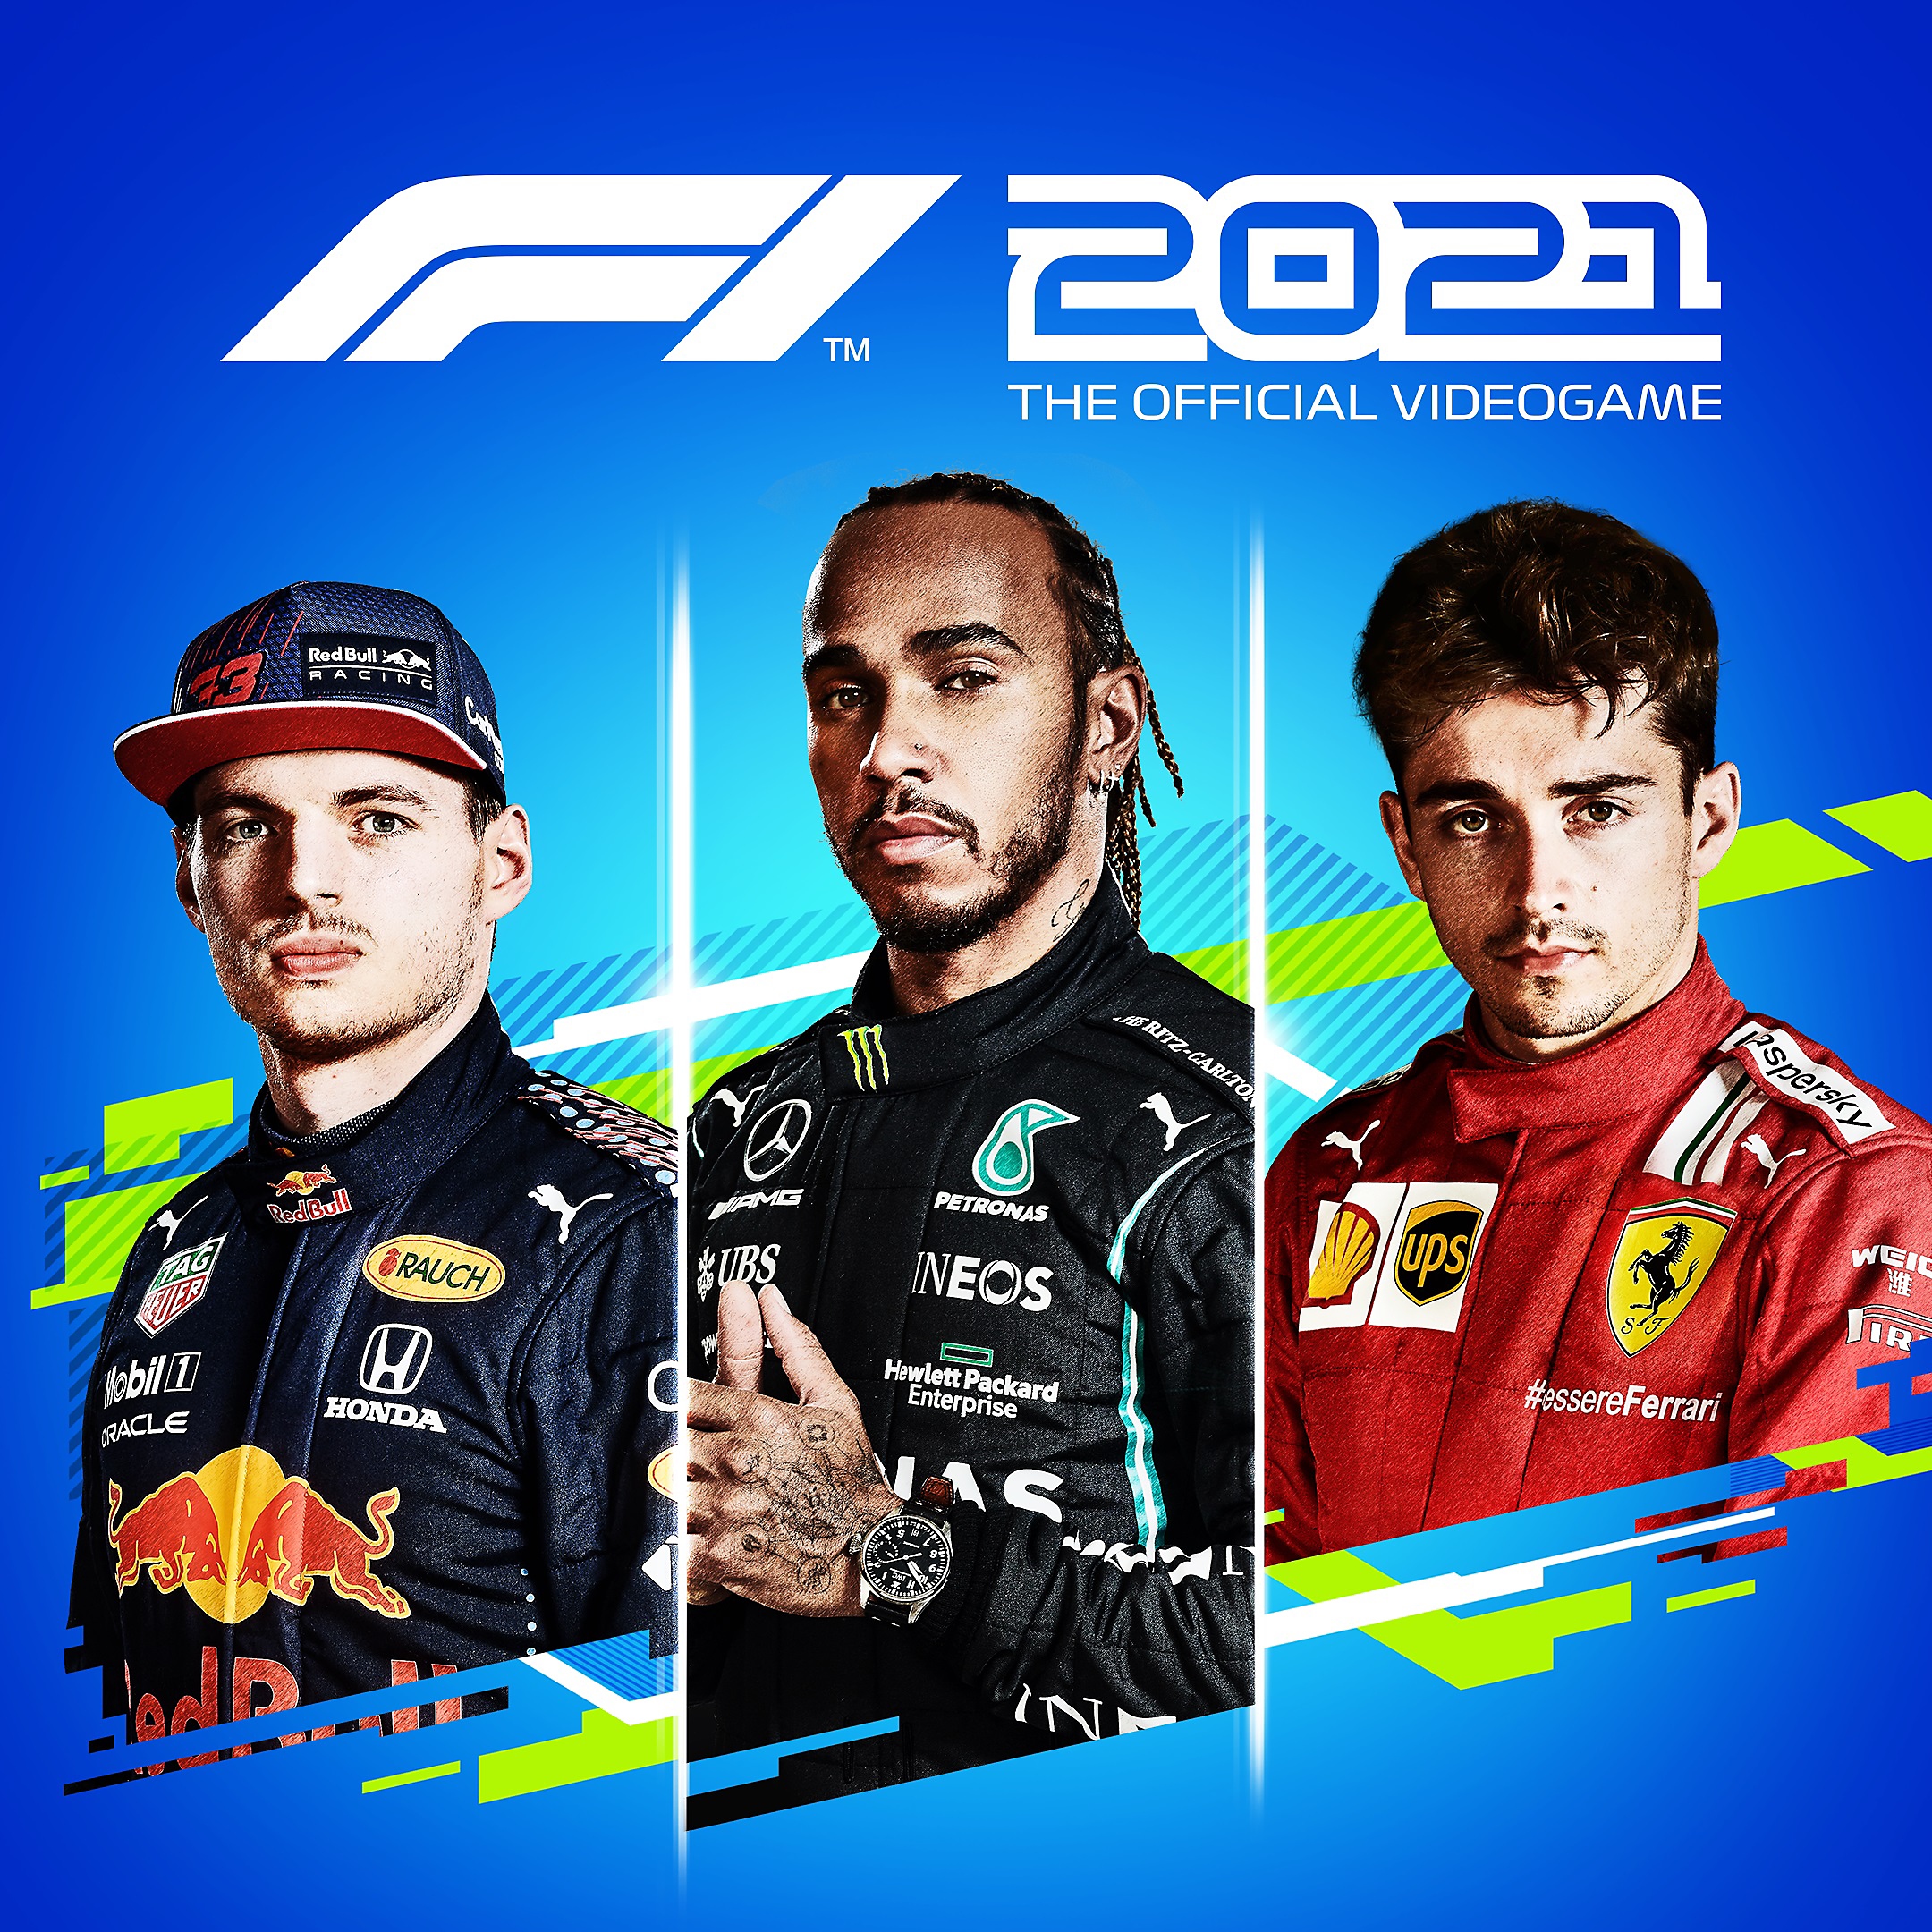 الصورة الفنية الأساسية للعبة F1 2021